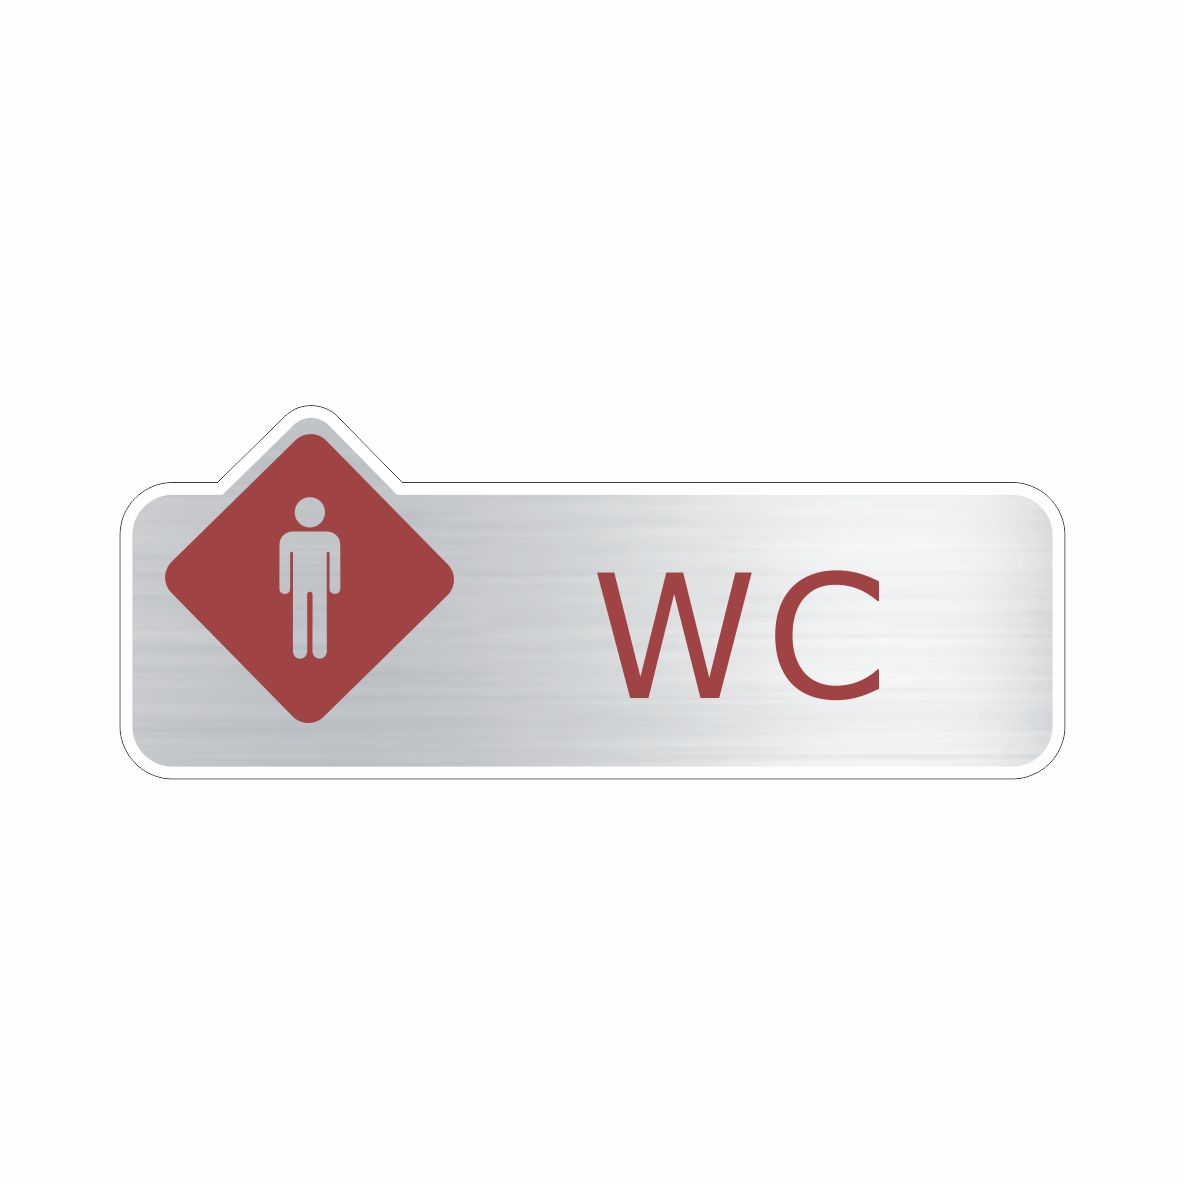 WC Masculino  - Towbar Sinalização de Segurança